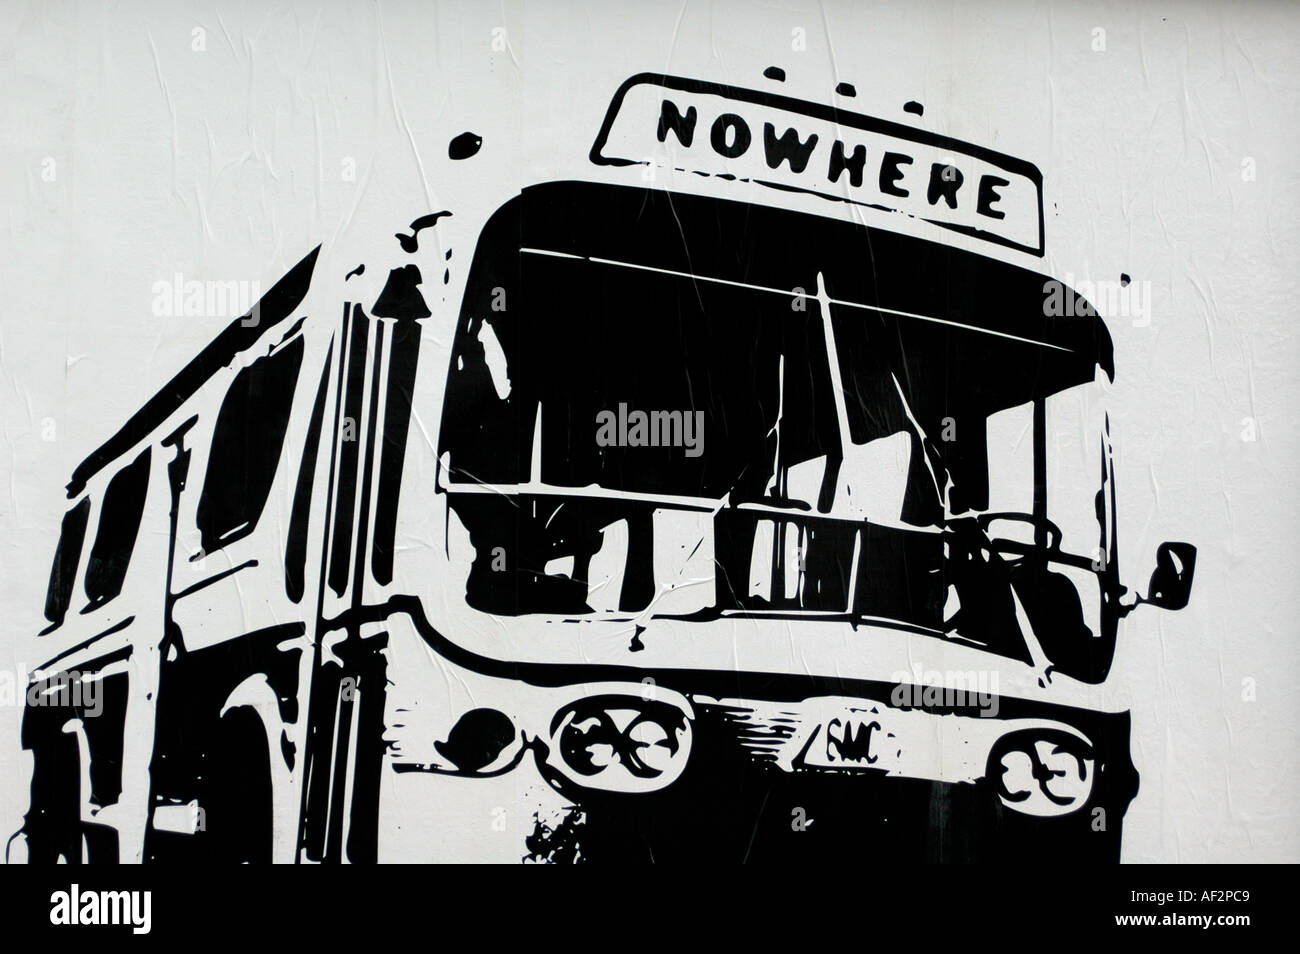 Graffiti Bus